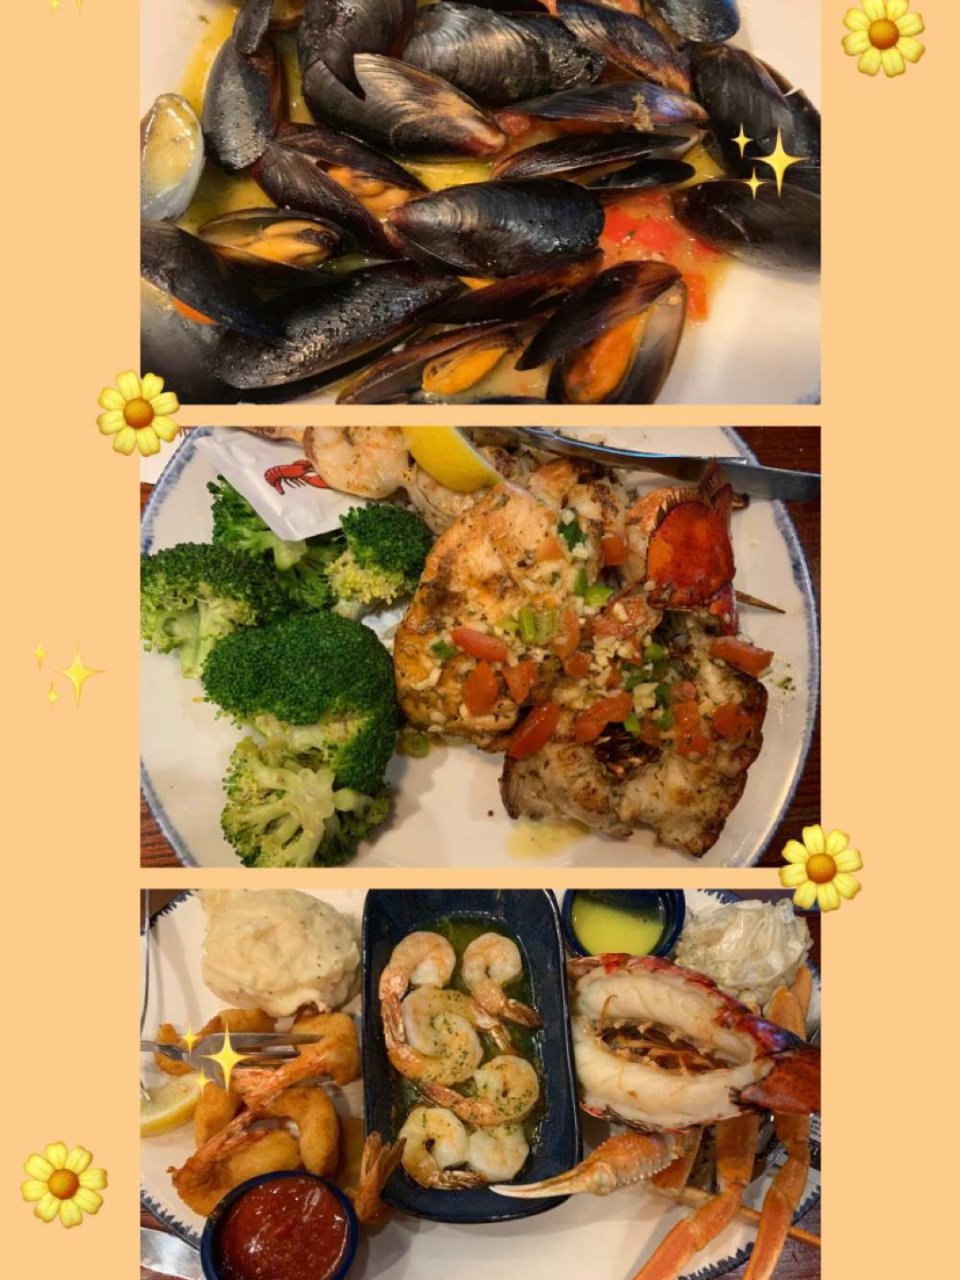 Red Lobster,Mussels,西兰花,螃蟹,Lobster,Shrimp,BBQ shrimp,鱼